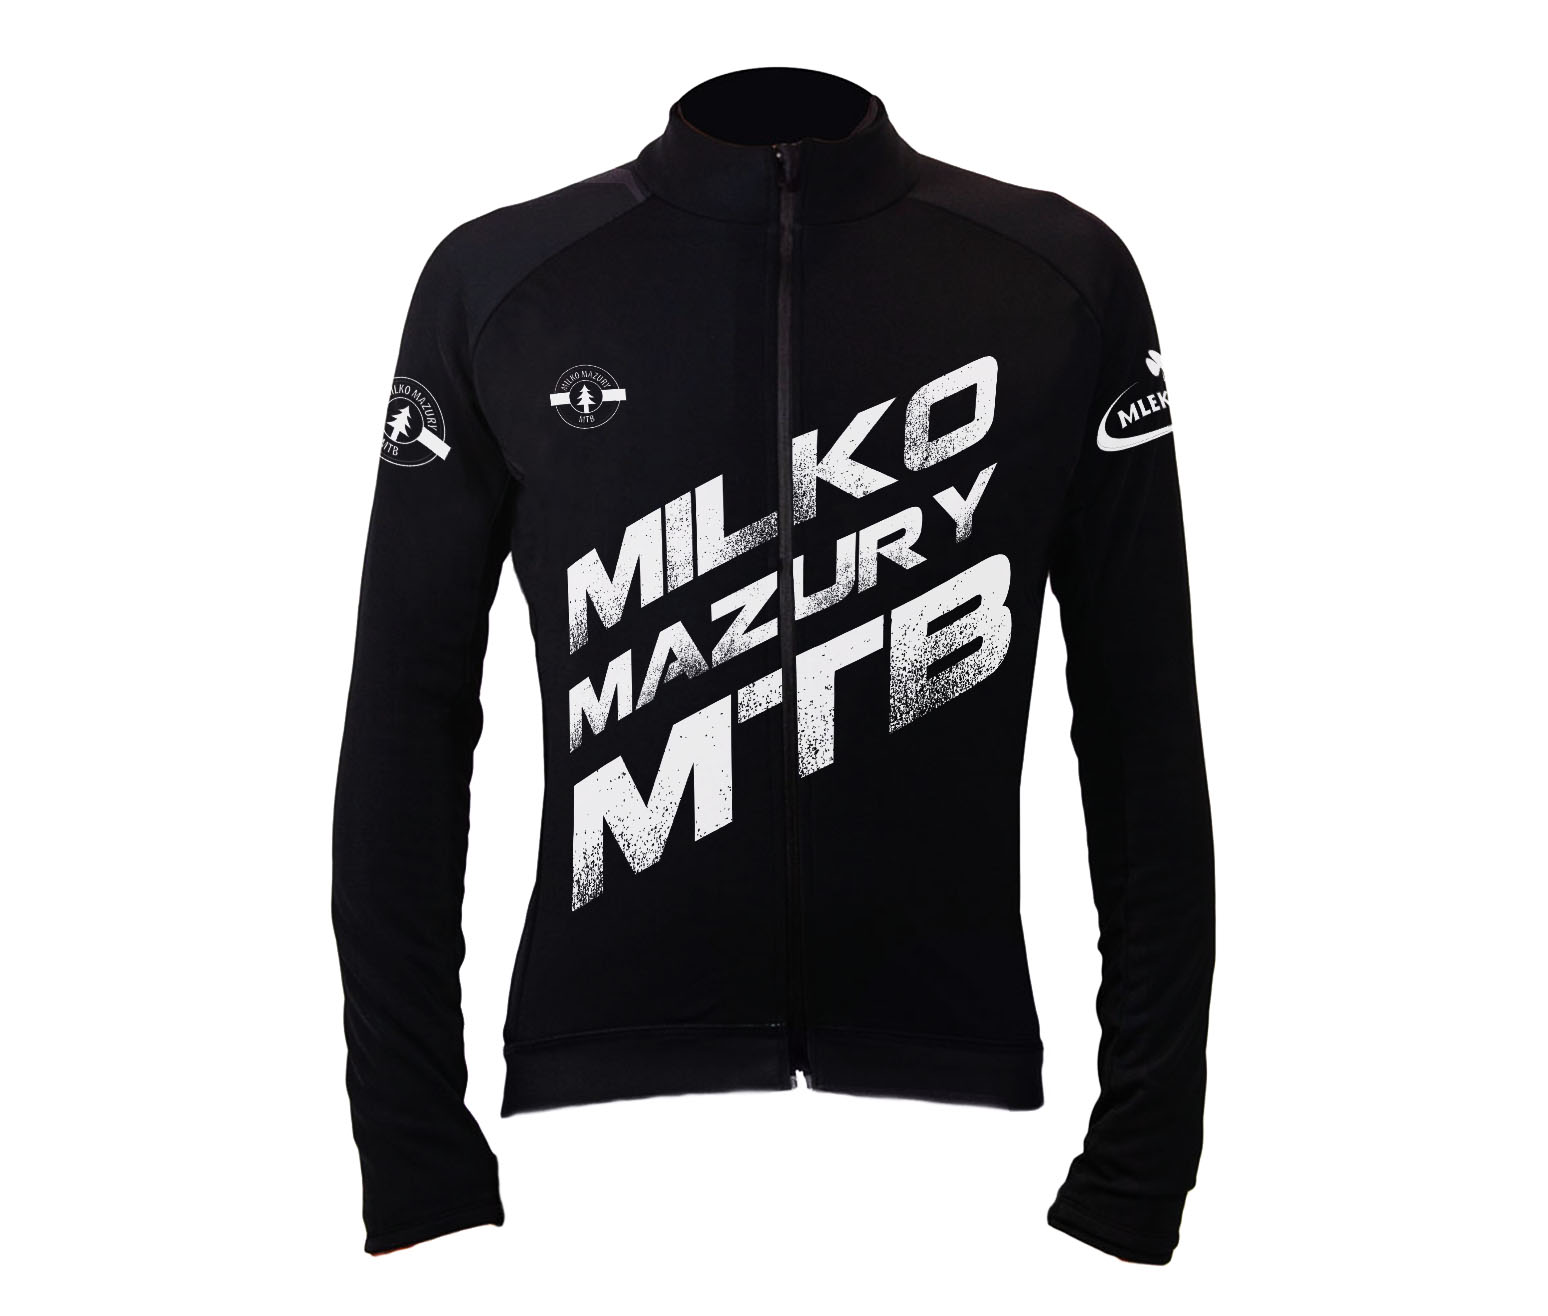 Bluza Black Milko Mazury MTB